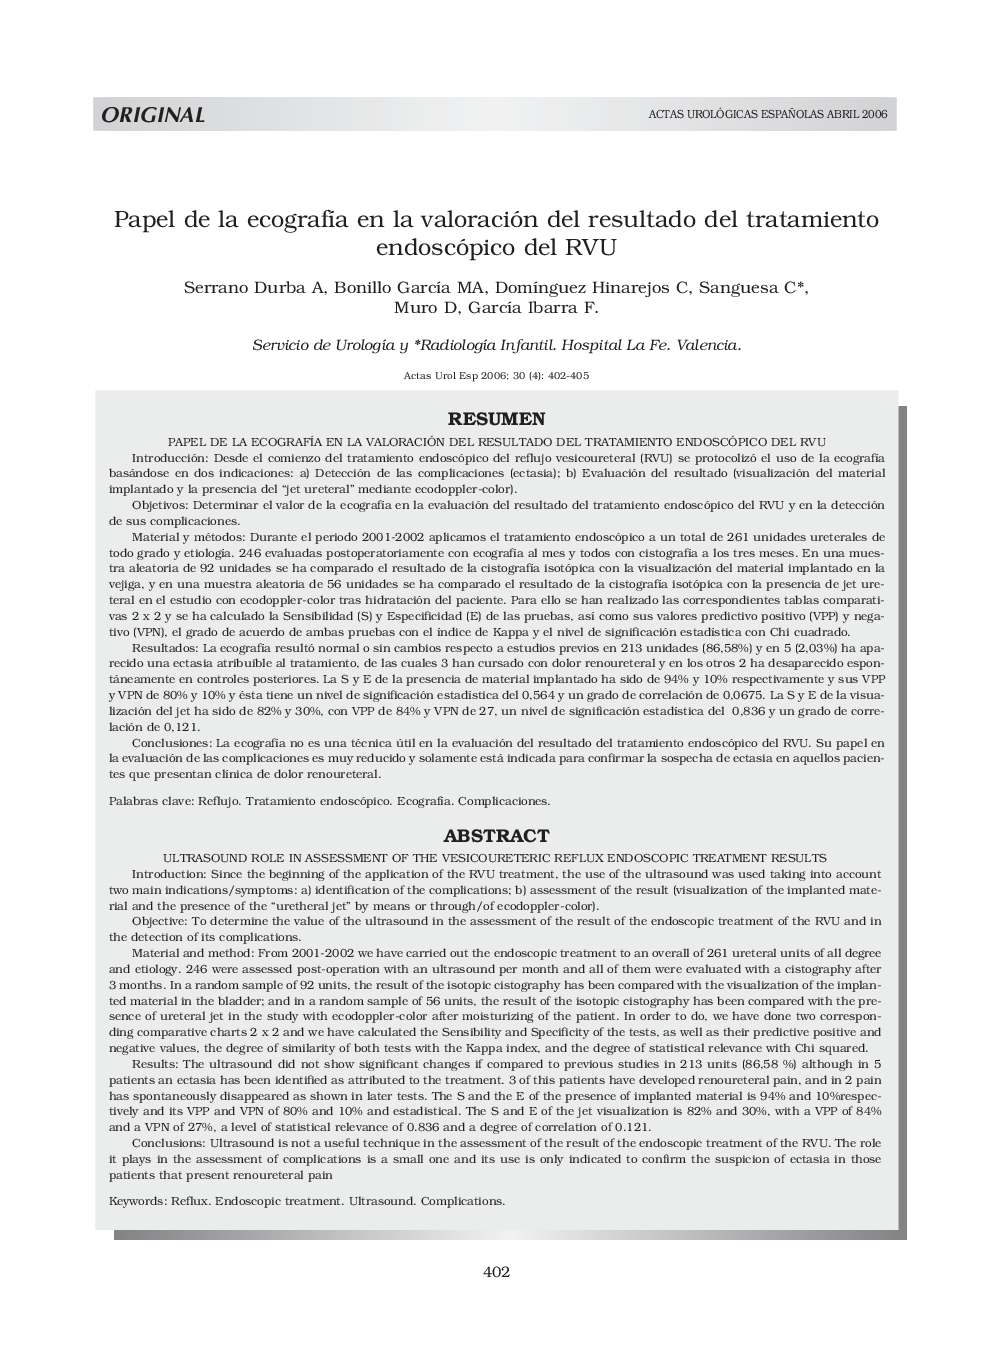 Papel de la ecografÃ­a en la valoración del resultado del tratamiento endoscópico del RVUUltrasound role in assessment of the vesicoureteric reflux endoscopic treatment results